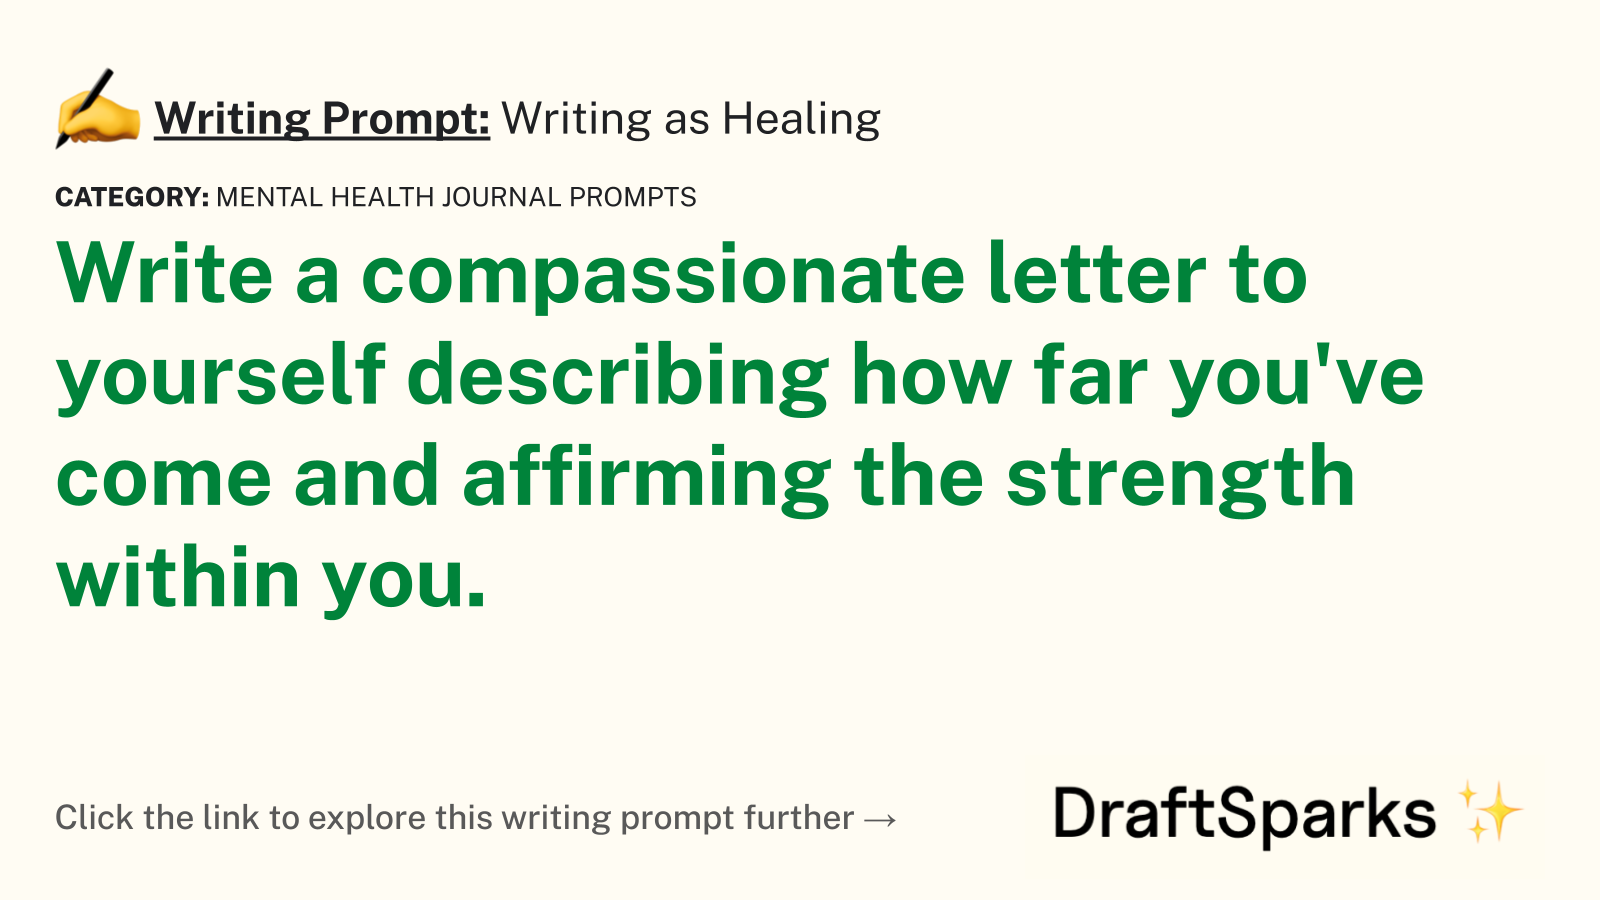 Writing as Healing